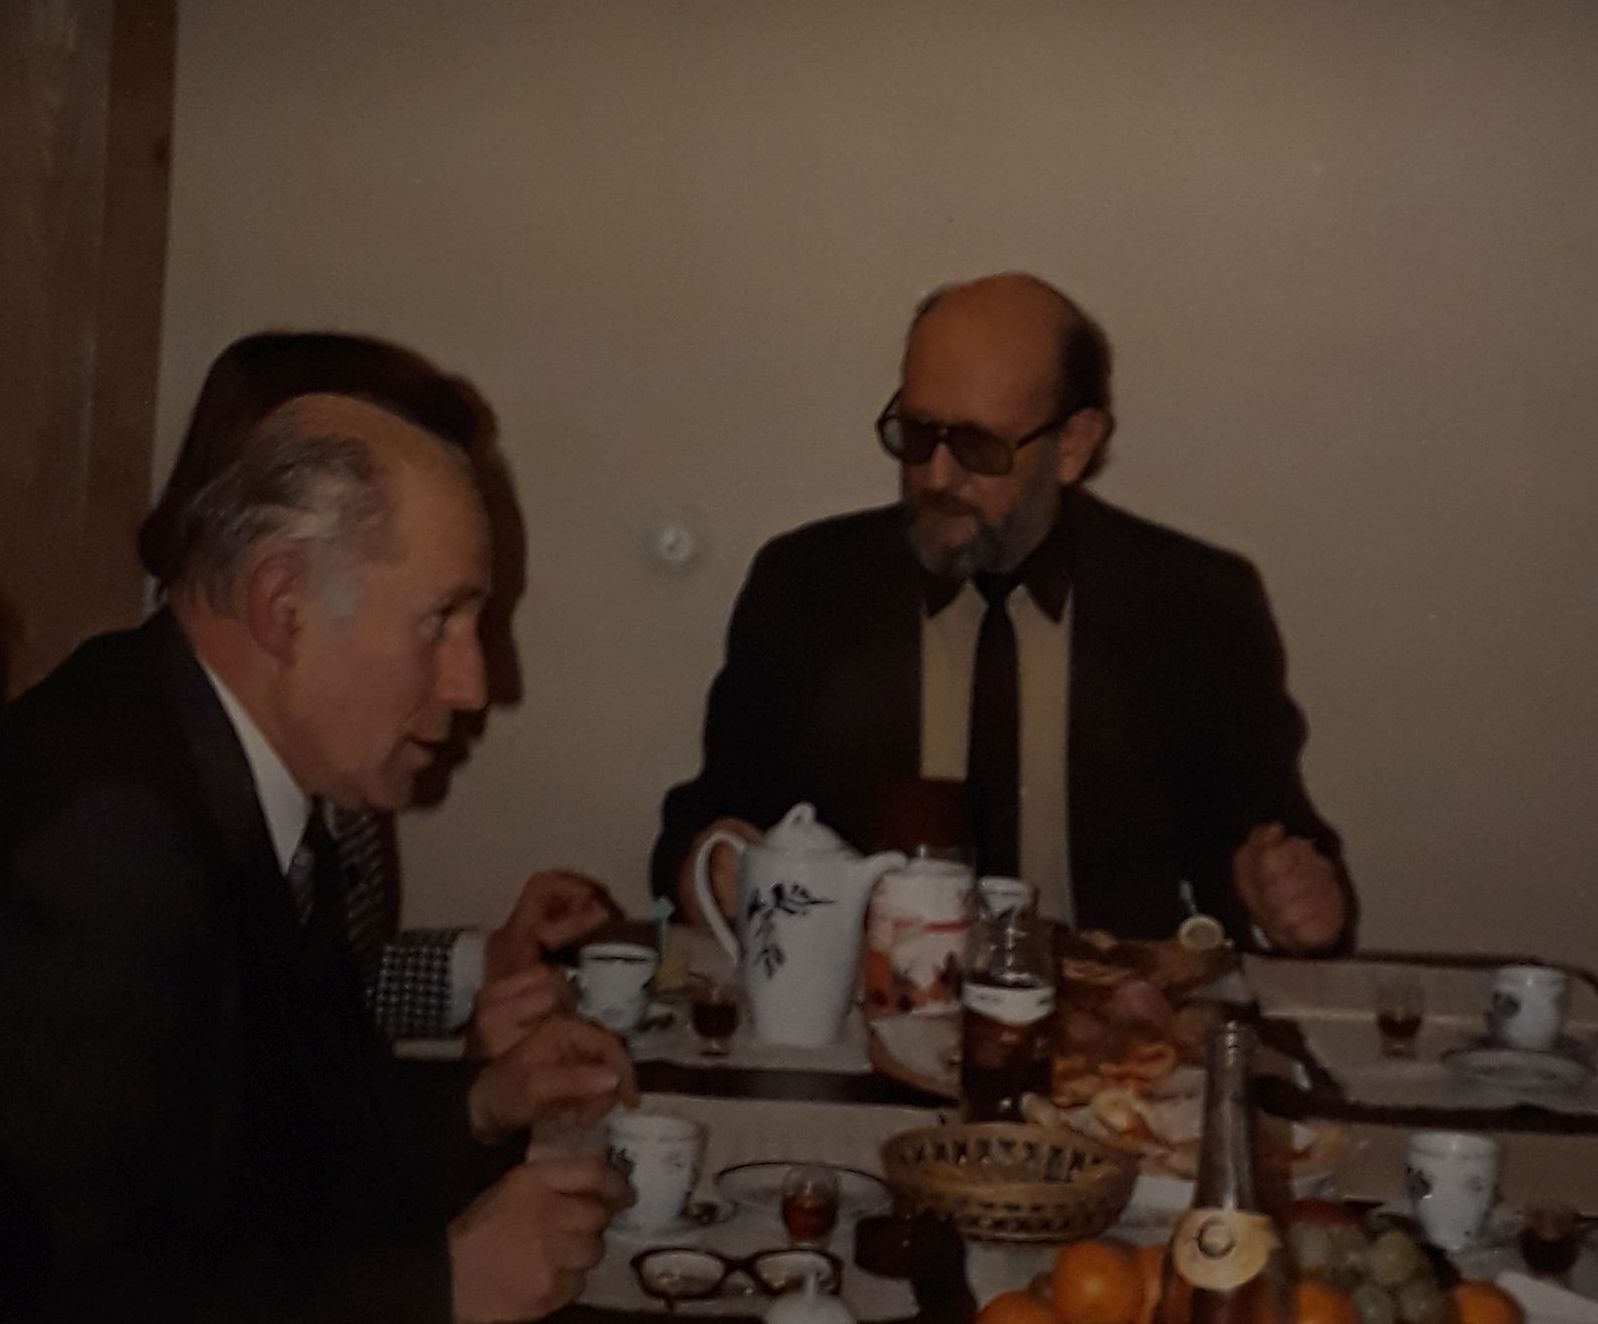 Su Archyvų generalinės direkcijos darbuotoju G. Bučiūnu, priimant užsienio svečius. 1993 m. gruodžio 16 d.